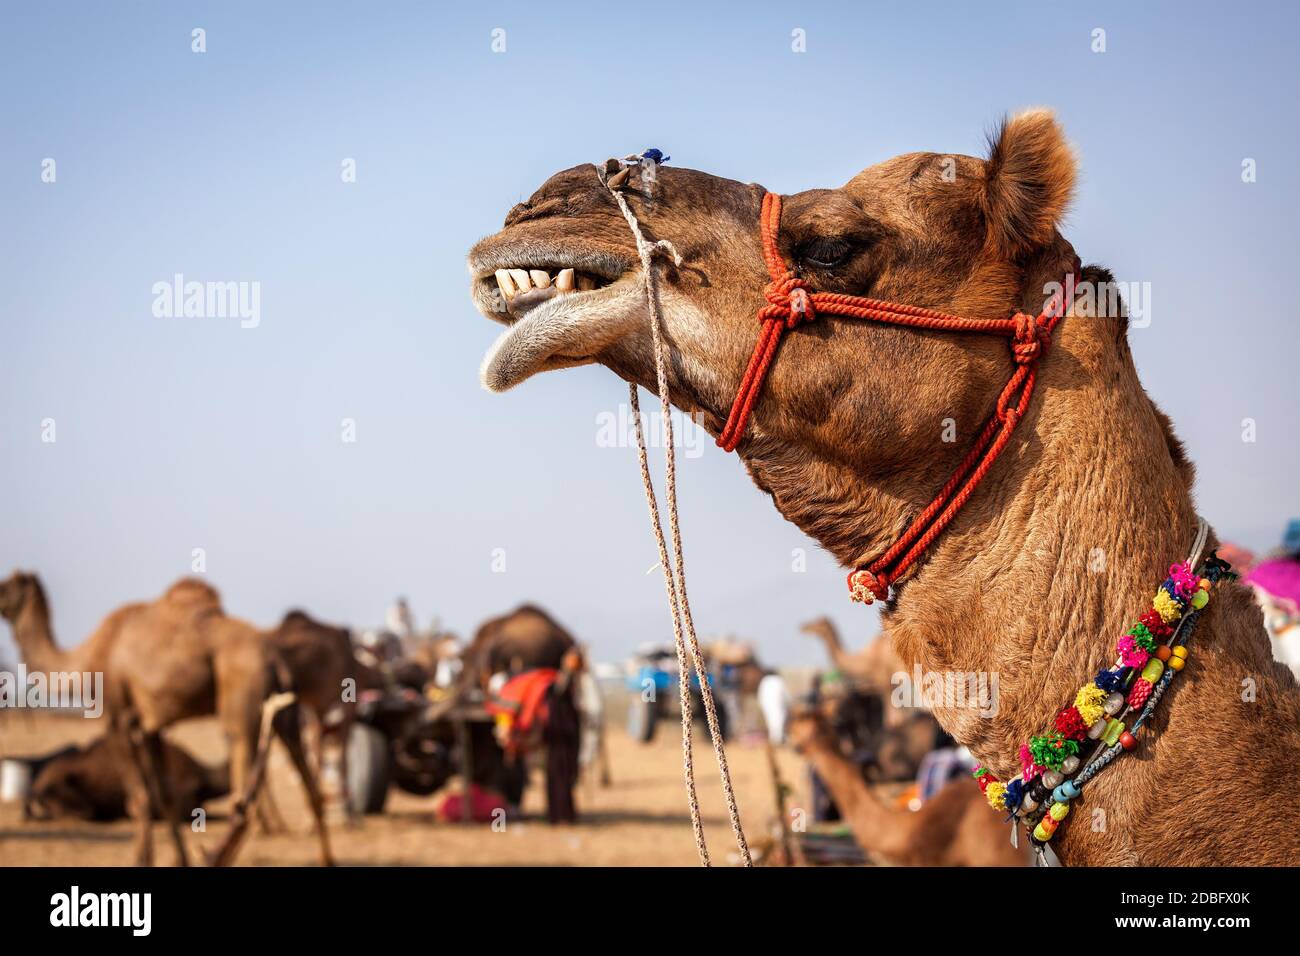 Cammelli a Pushkar Mela - famosa fiera annuale del cammello e del bestiame, che si tiene nella città di Pushkar. Pushkar Mela è una delle più grandi fiere di cammelli al mondo Foto Stock